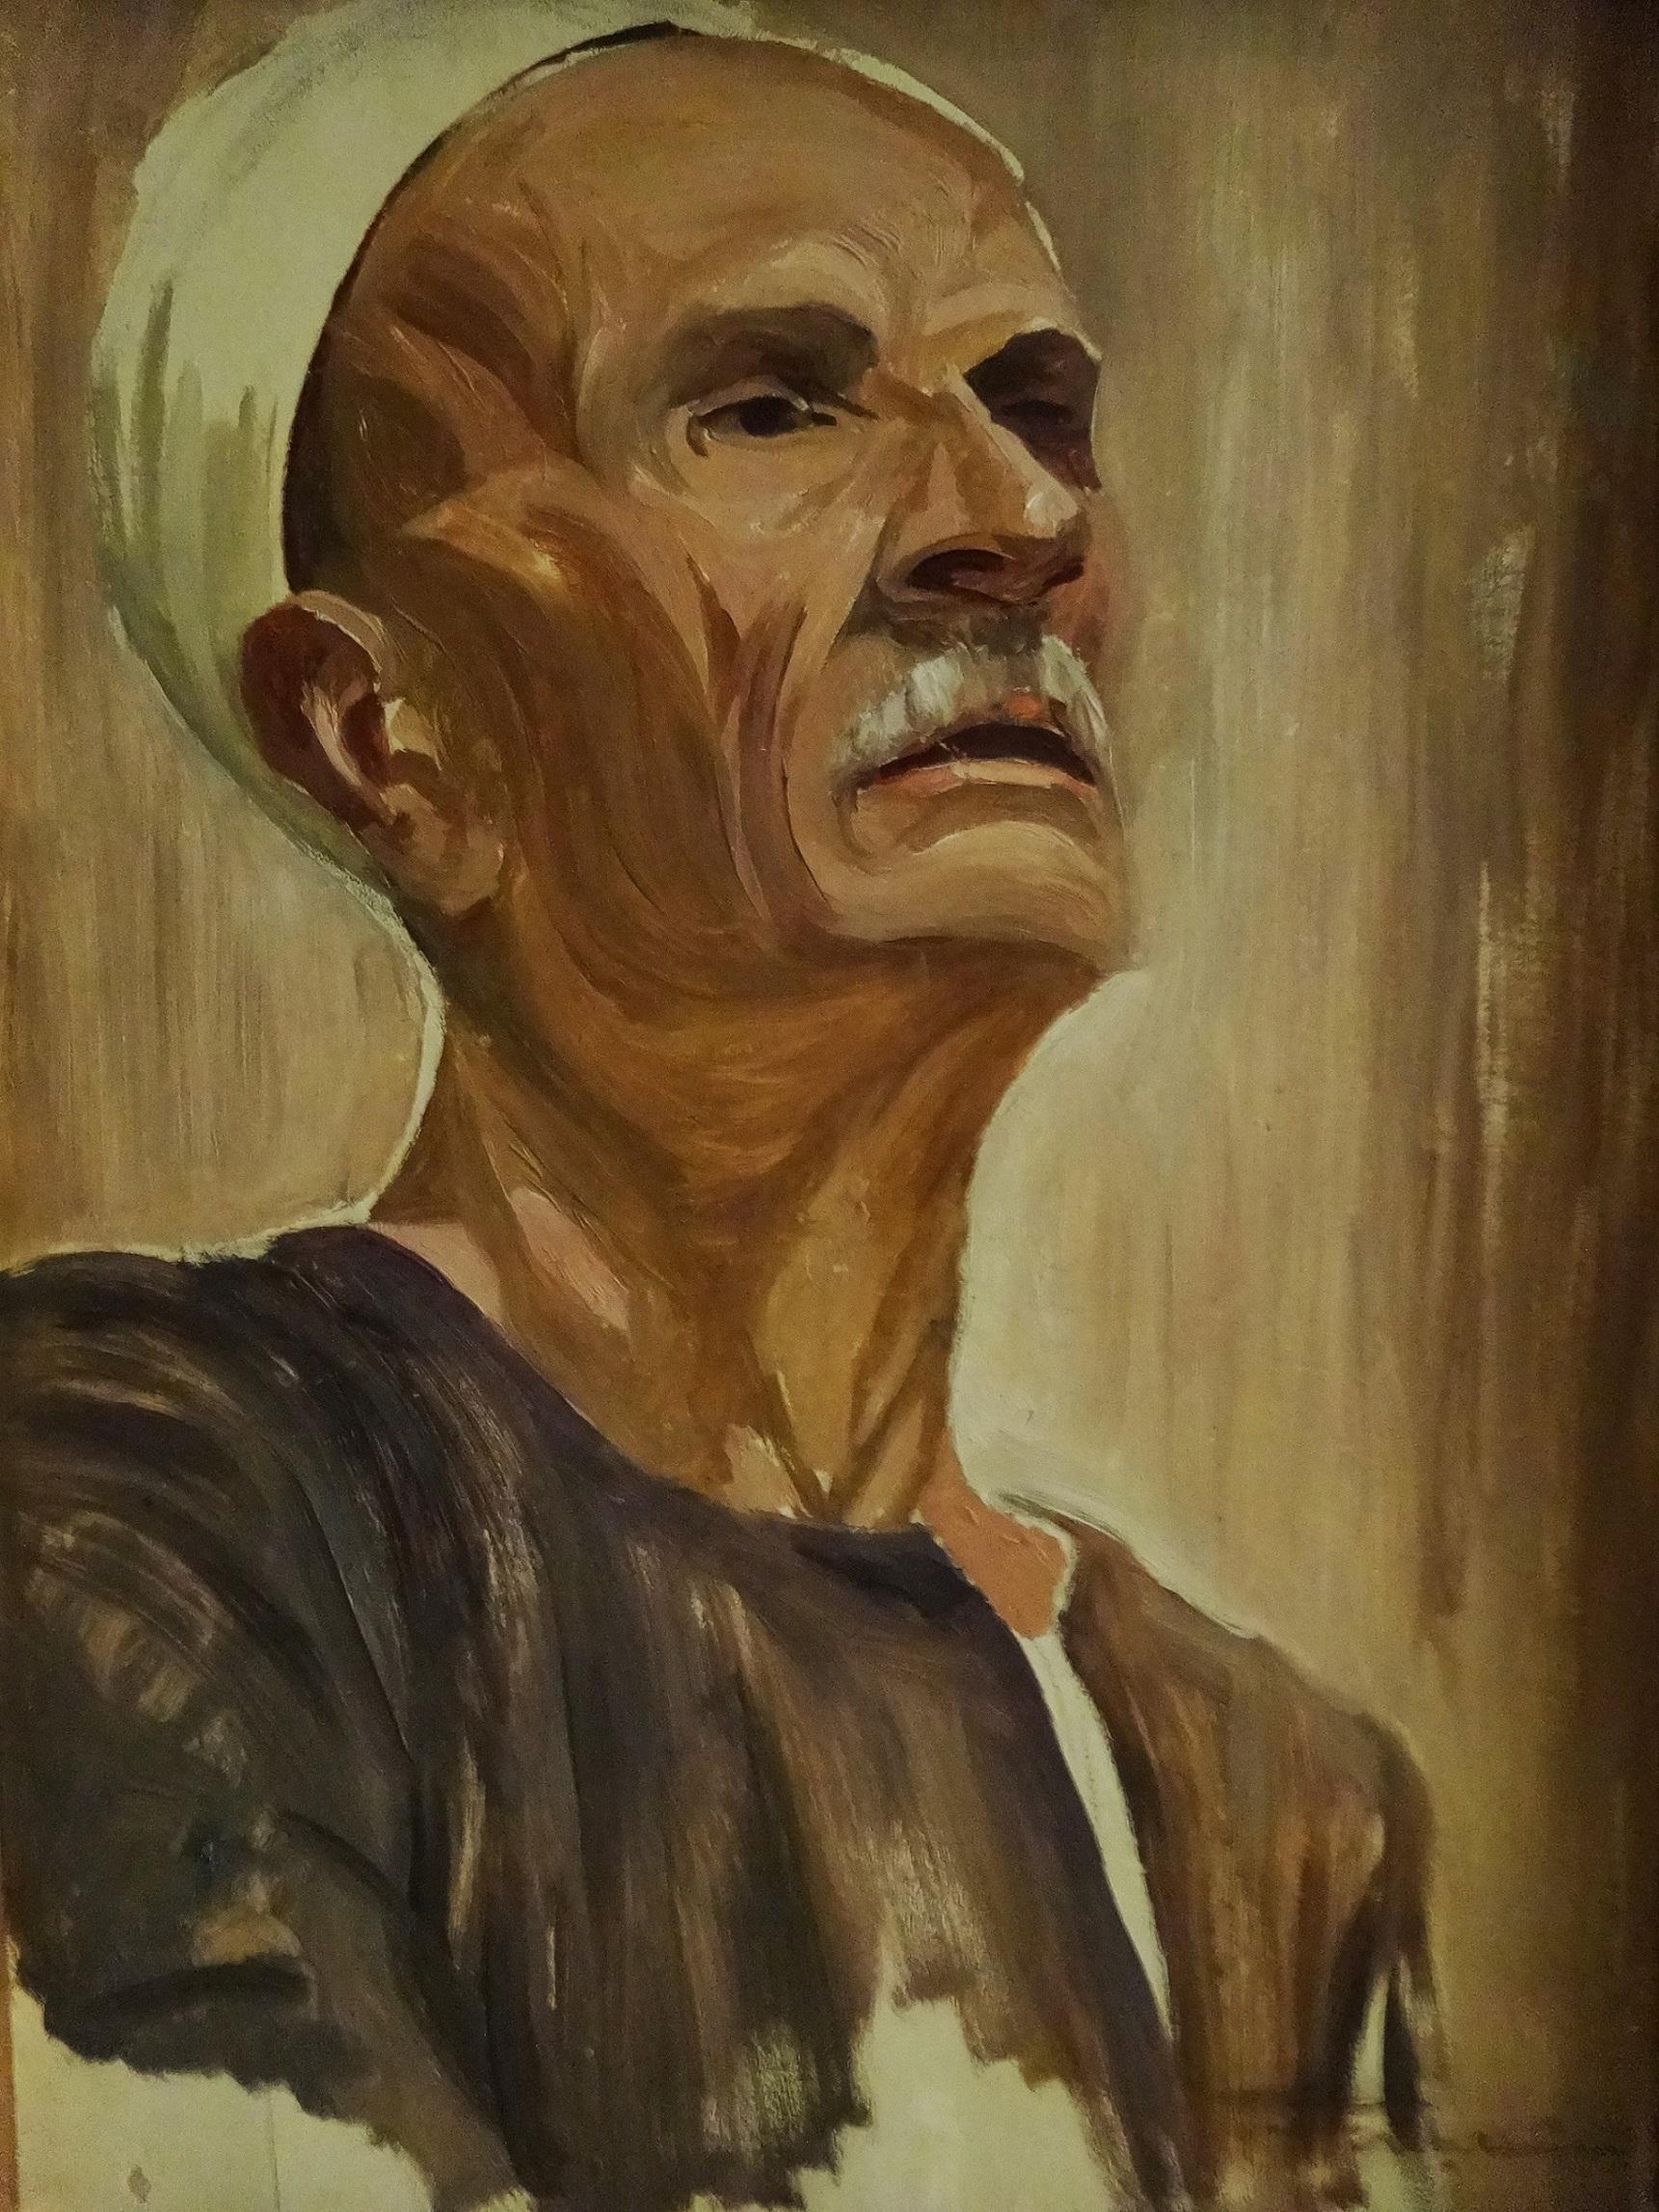 "Farmer" Peinture à l'huile - Portrait de 16" x 12" pouces par Shaaban Zaki